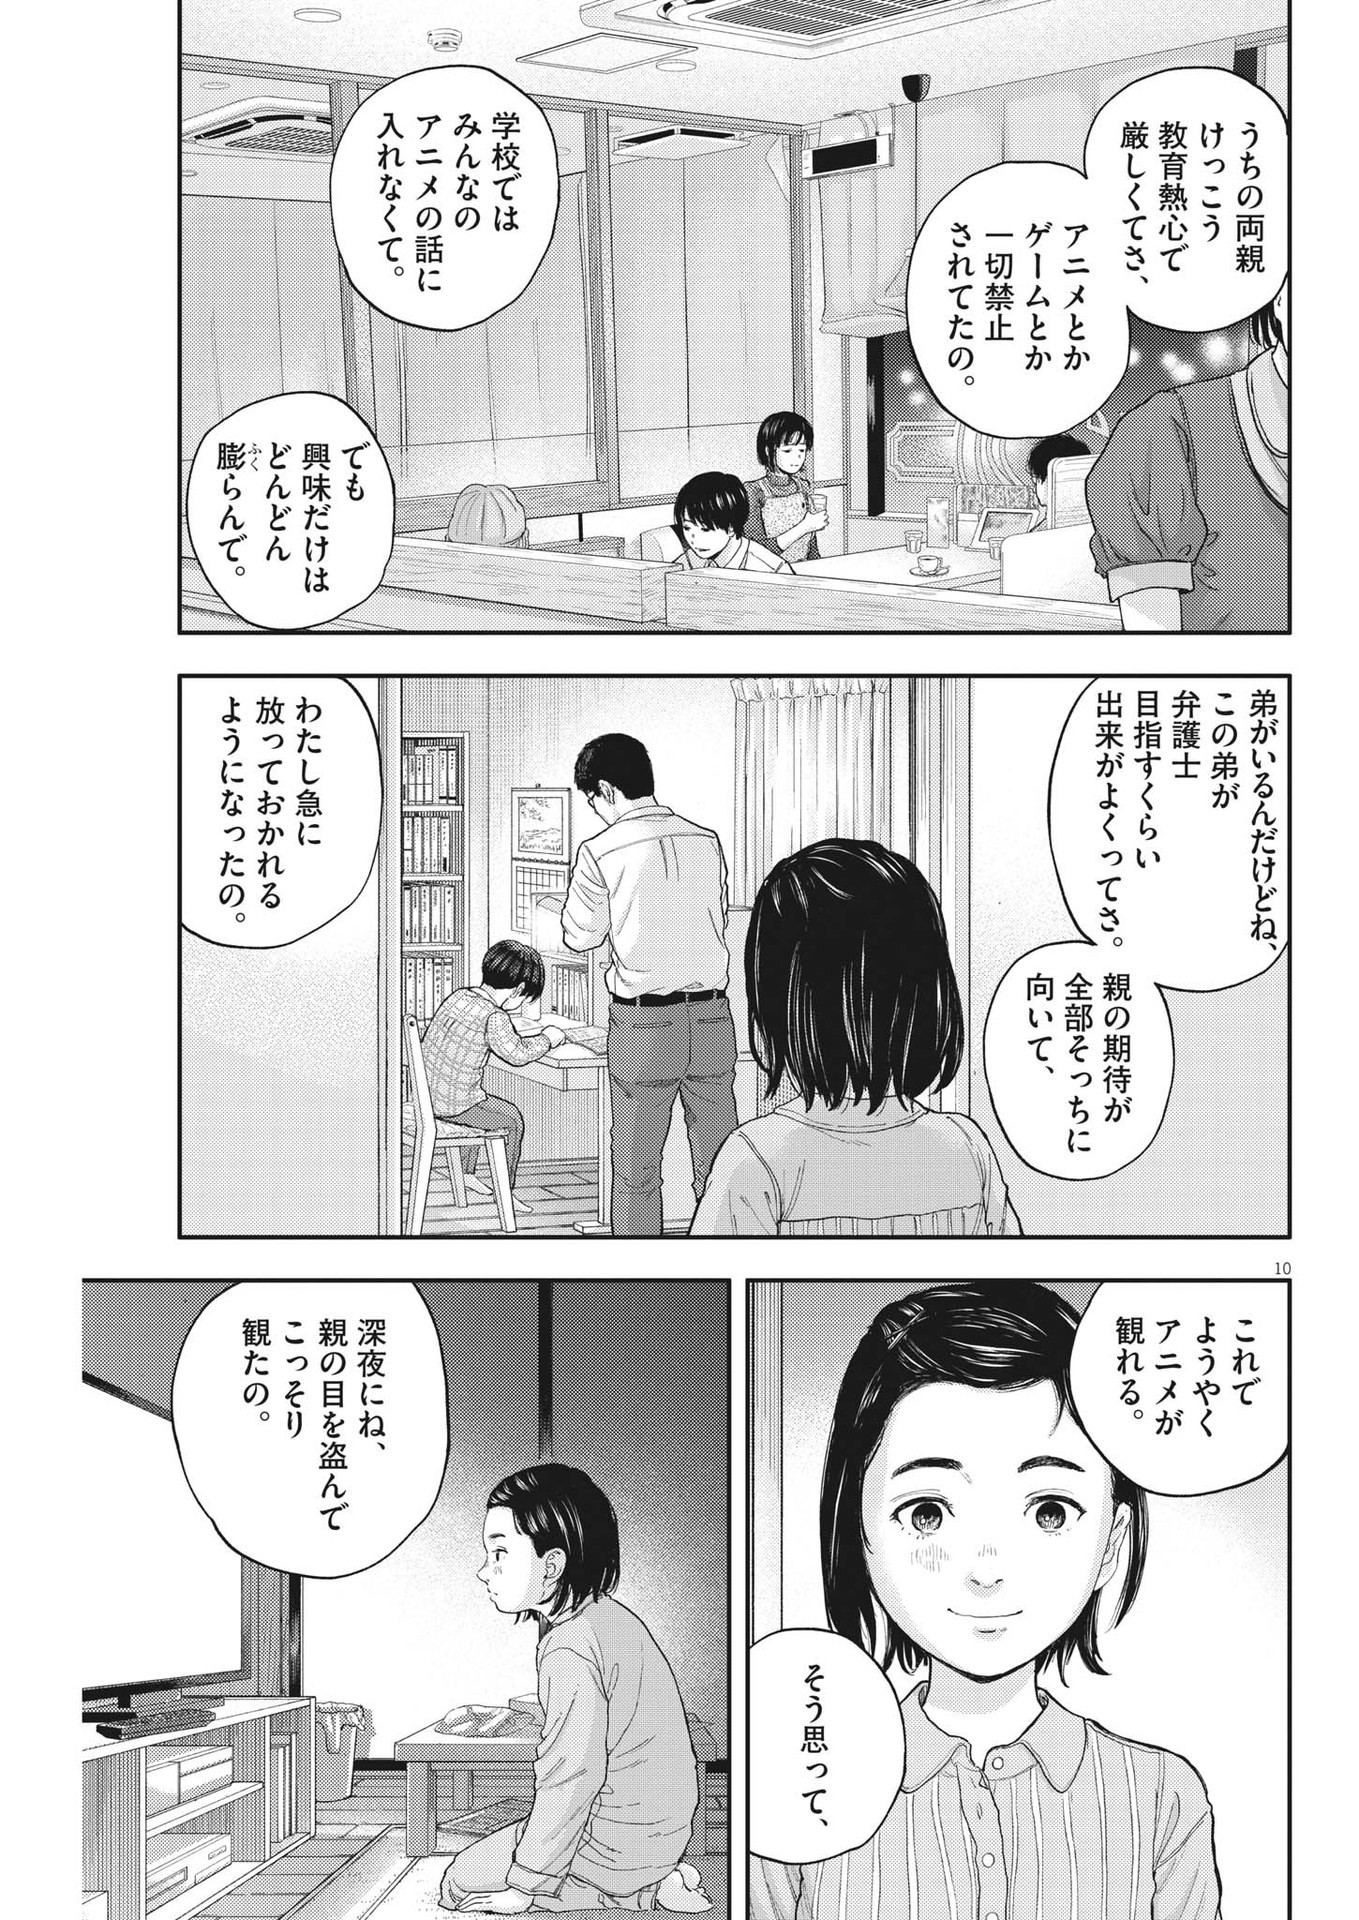 Yumenashi-sensei no Shinroshidou - Chapter 2 - Page 10